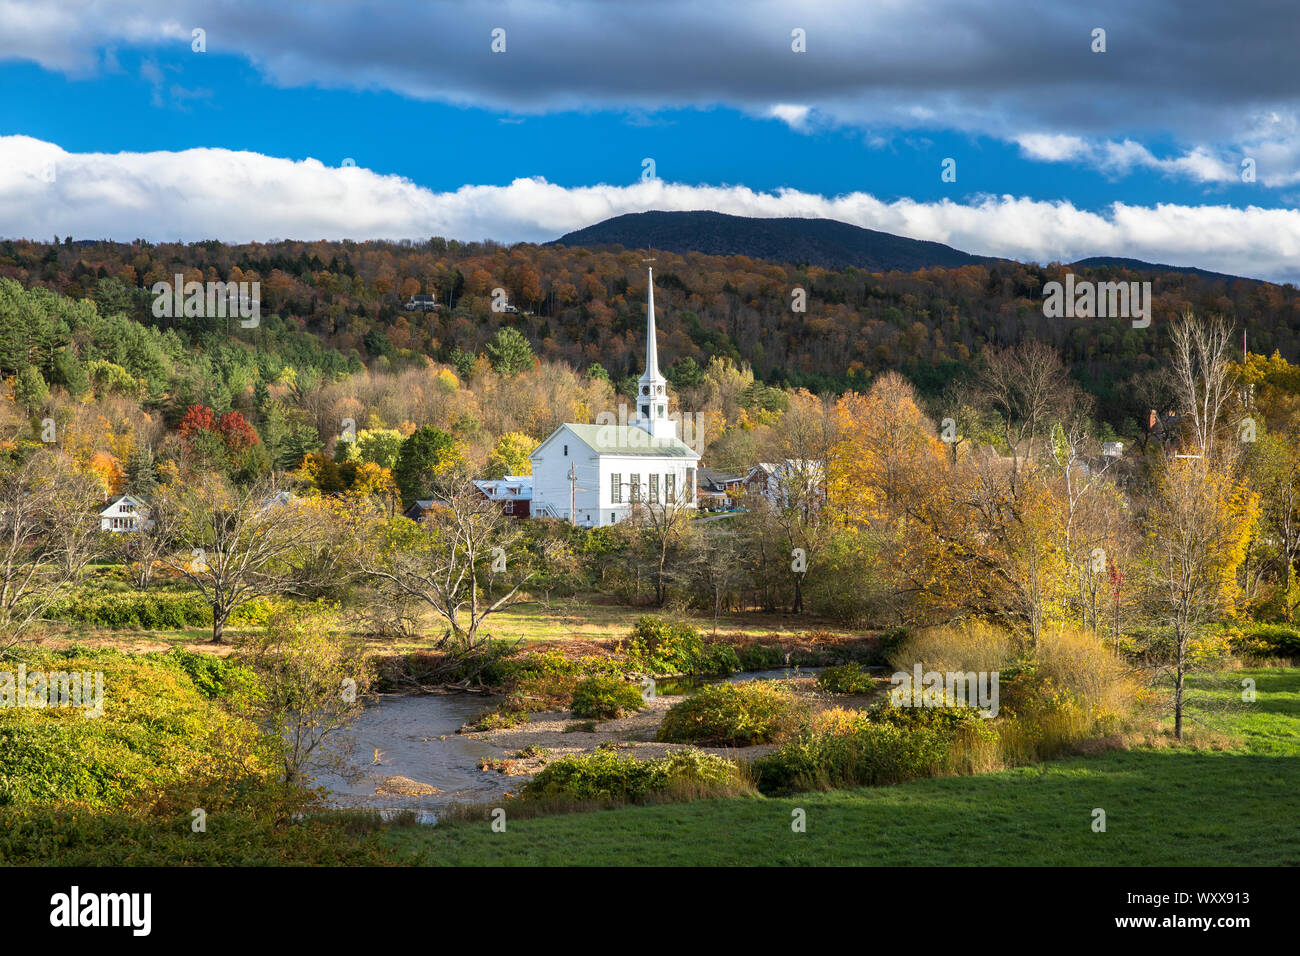 Tipica del New England - Scena Stowe chiesa in un paesaggio di caduta delle foglie di colori nel Vermont, USA Foto Stock